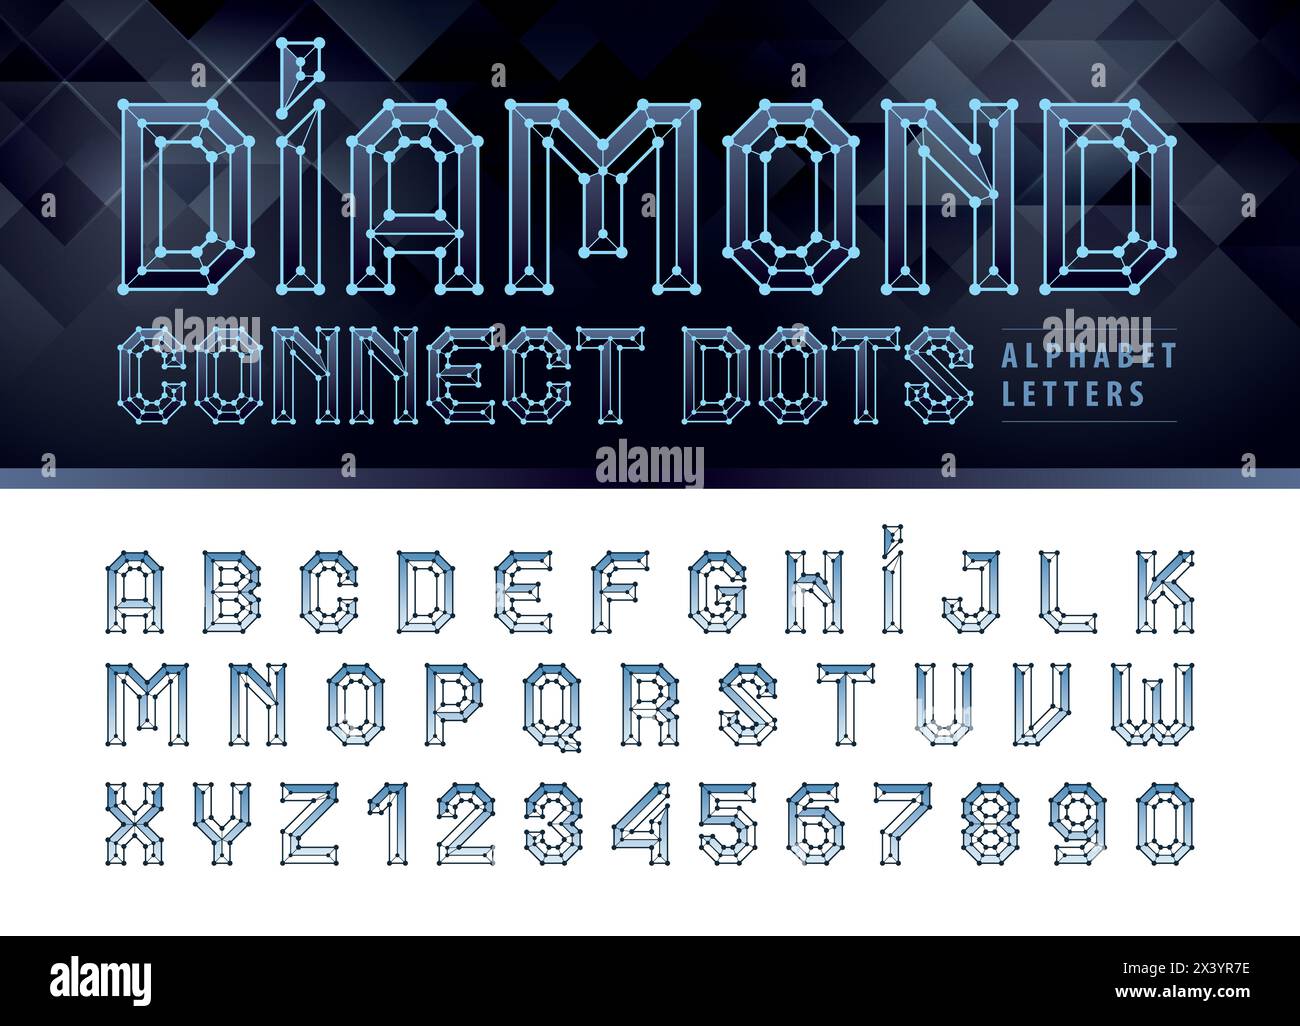 Diamond Line Connect Punkte Buchstaben und Zahlen, Polygonbuchstabe für Netzwerkverbindungspunkte, Technologiestruktur oder molekulare Verbindungselemente, FUT Stock Vektor